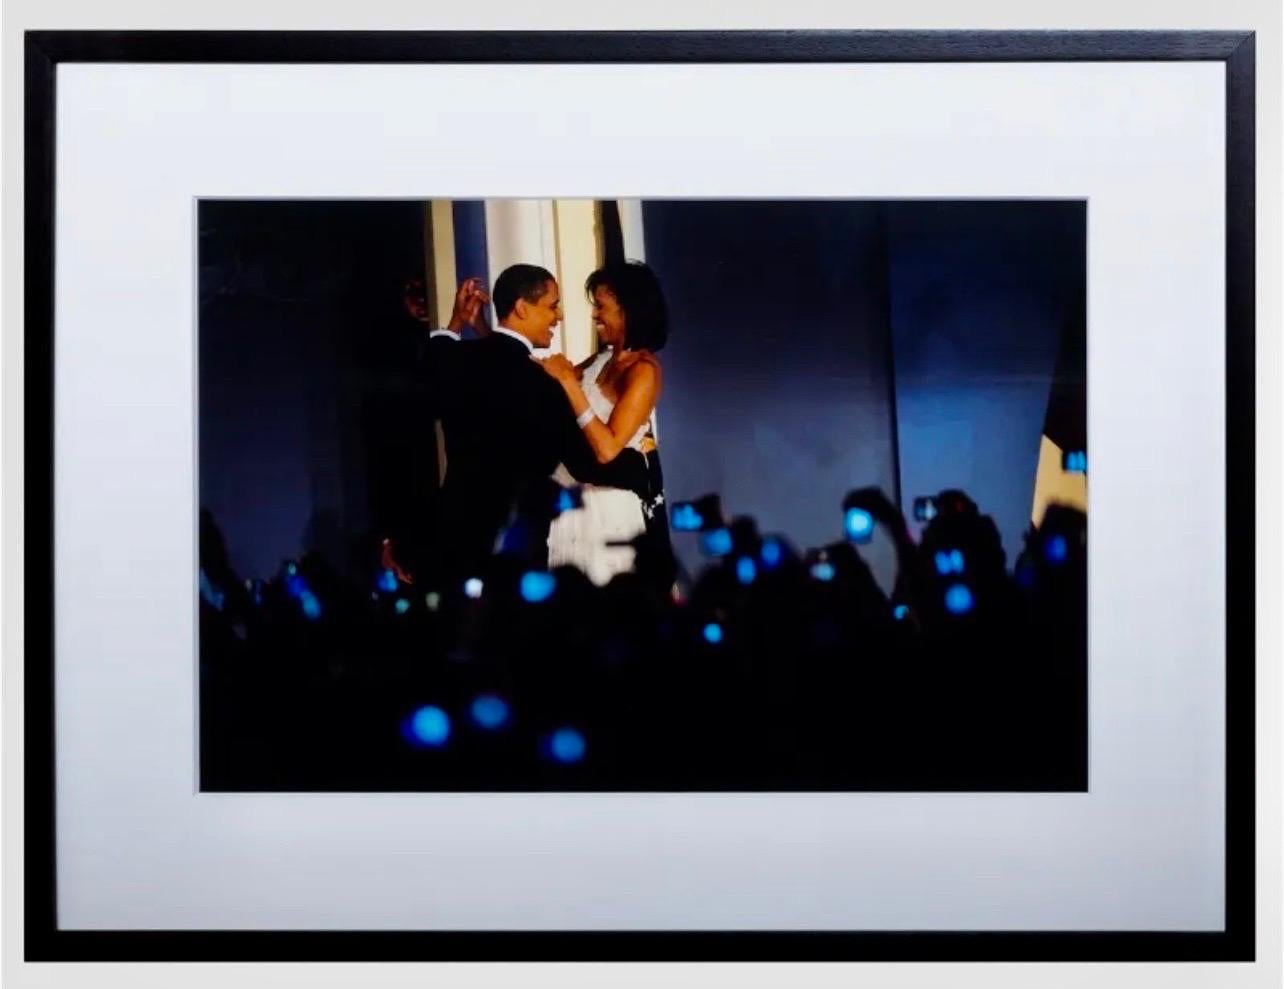 Photo vintage du soir de l'inauguration de Michelle Obama prise par le président Obama - Photograph de Scout Tufankjian